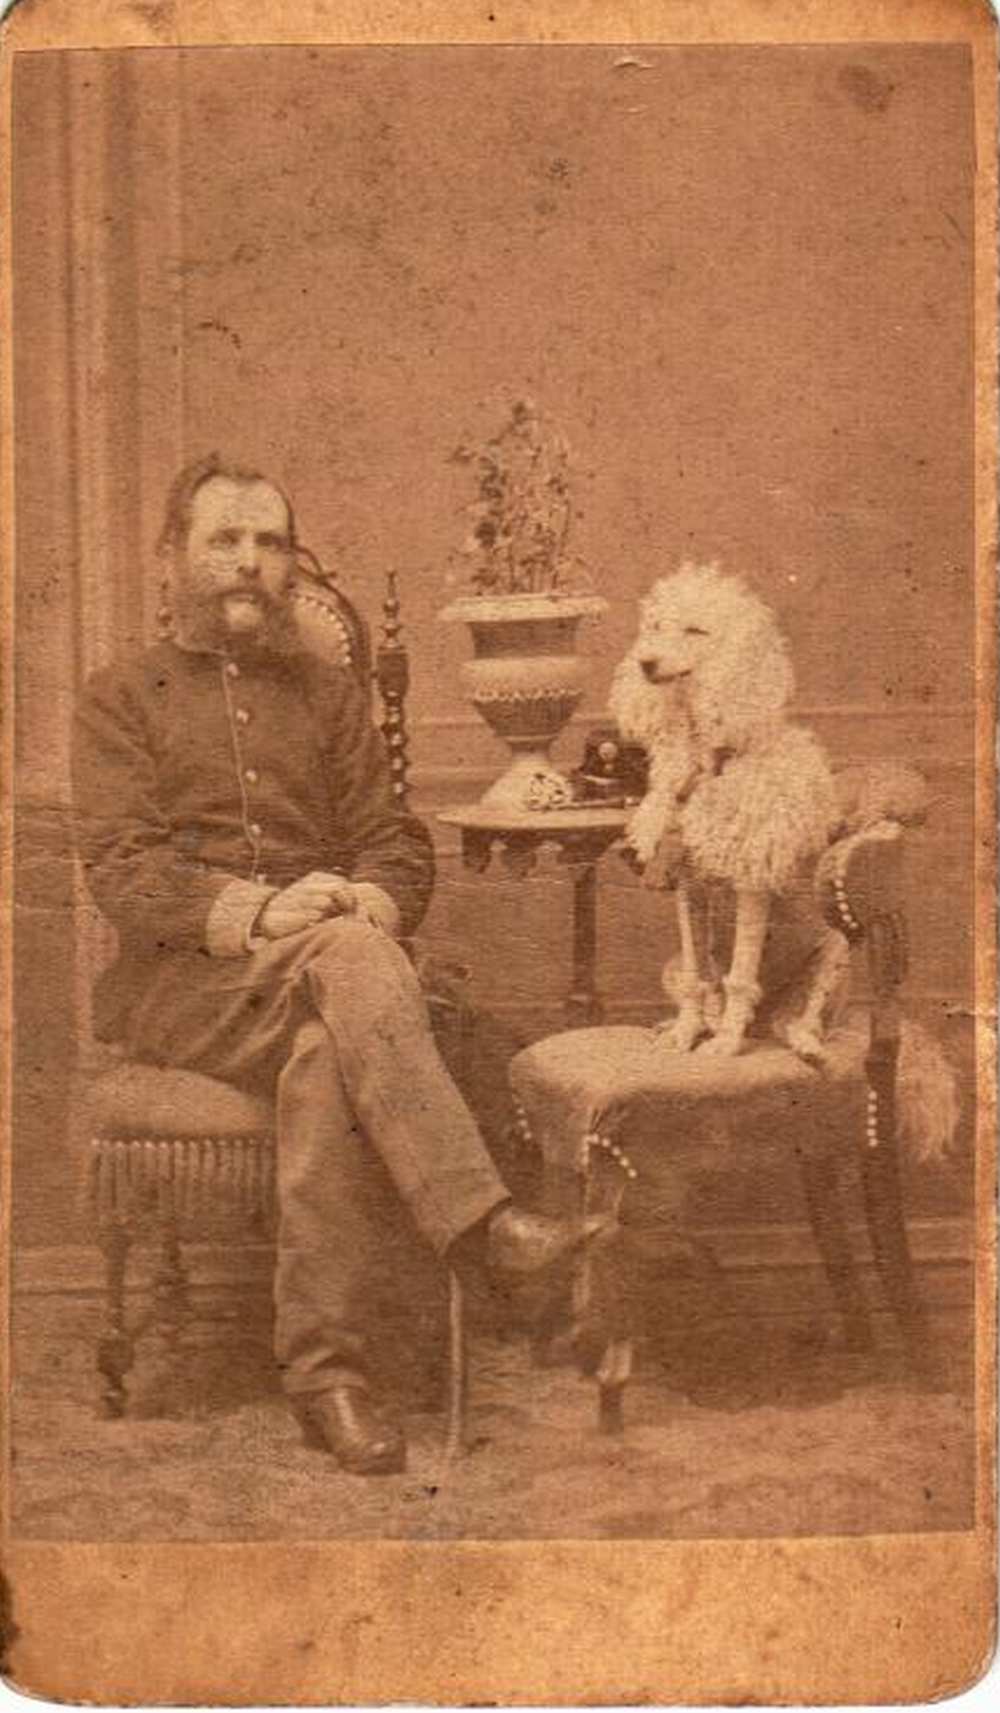 Weinwurm és fiai: Szakállas férfi portréja kutyájával. Recto – Magángyűjtemény